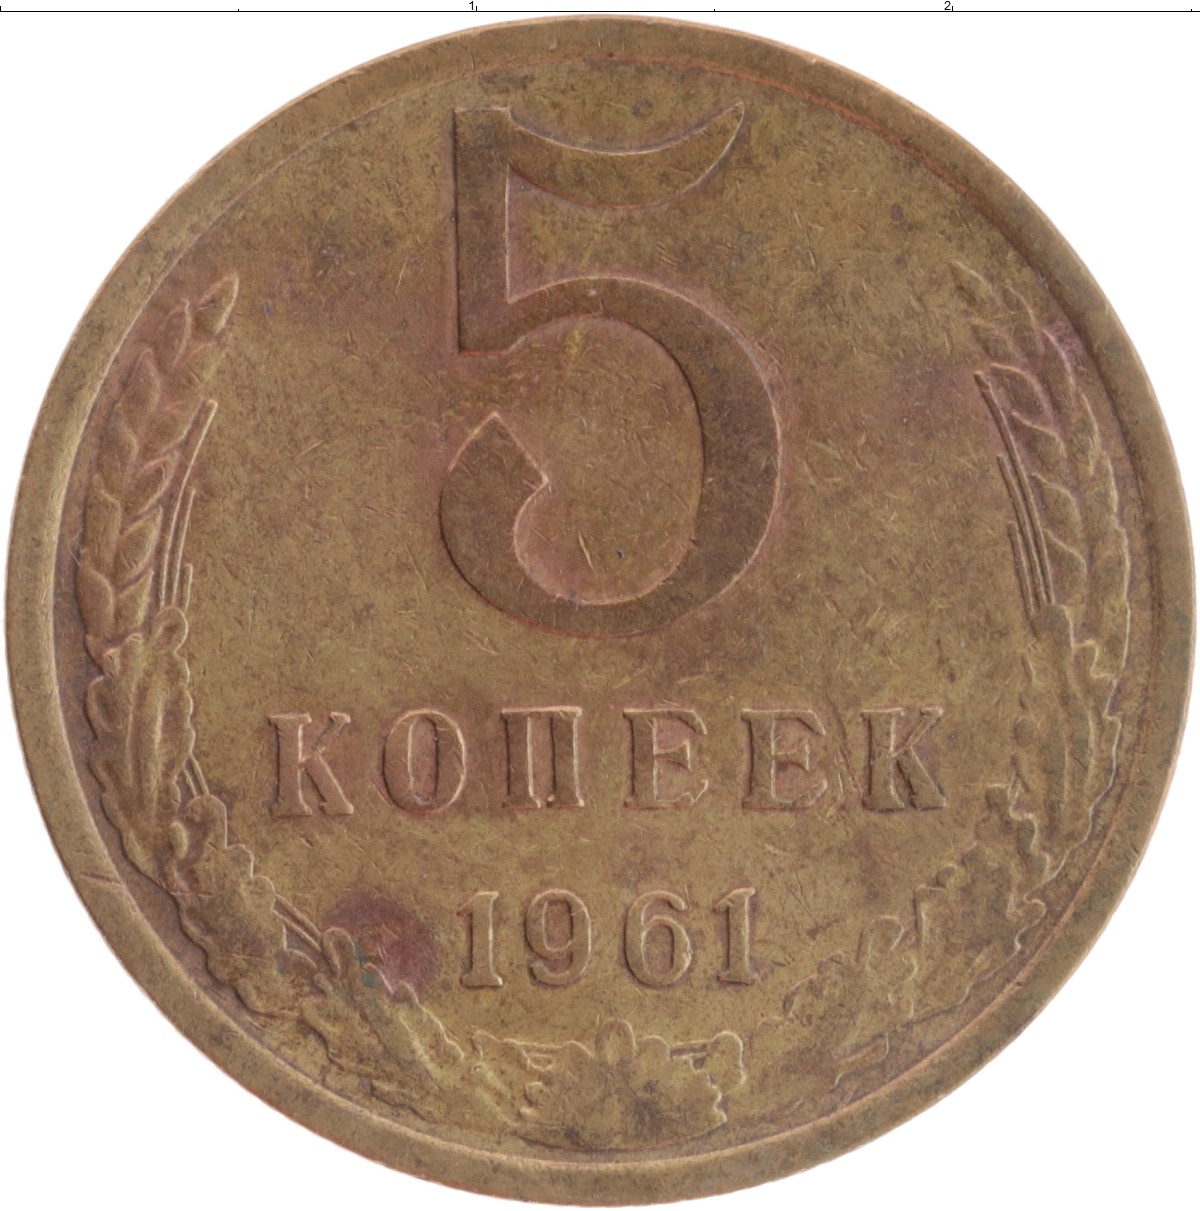 6 80 в рублях. Монета 5 копеек 1961. Монета 5 копеек 1961 года. Монета 5 копеек 1961 года СССР. Пять копеек 1961 года.